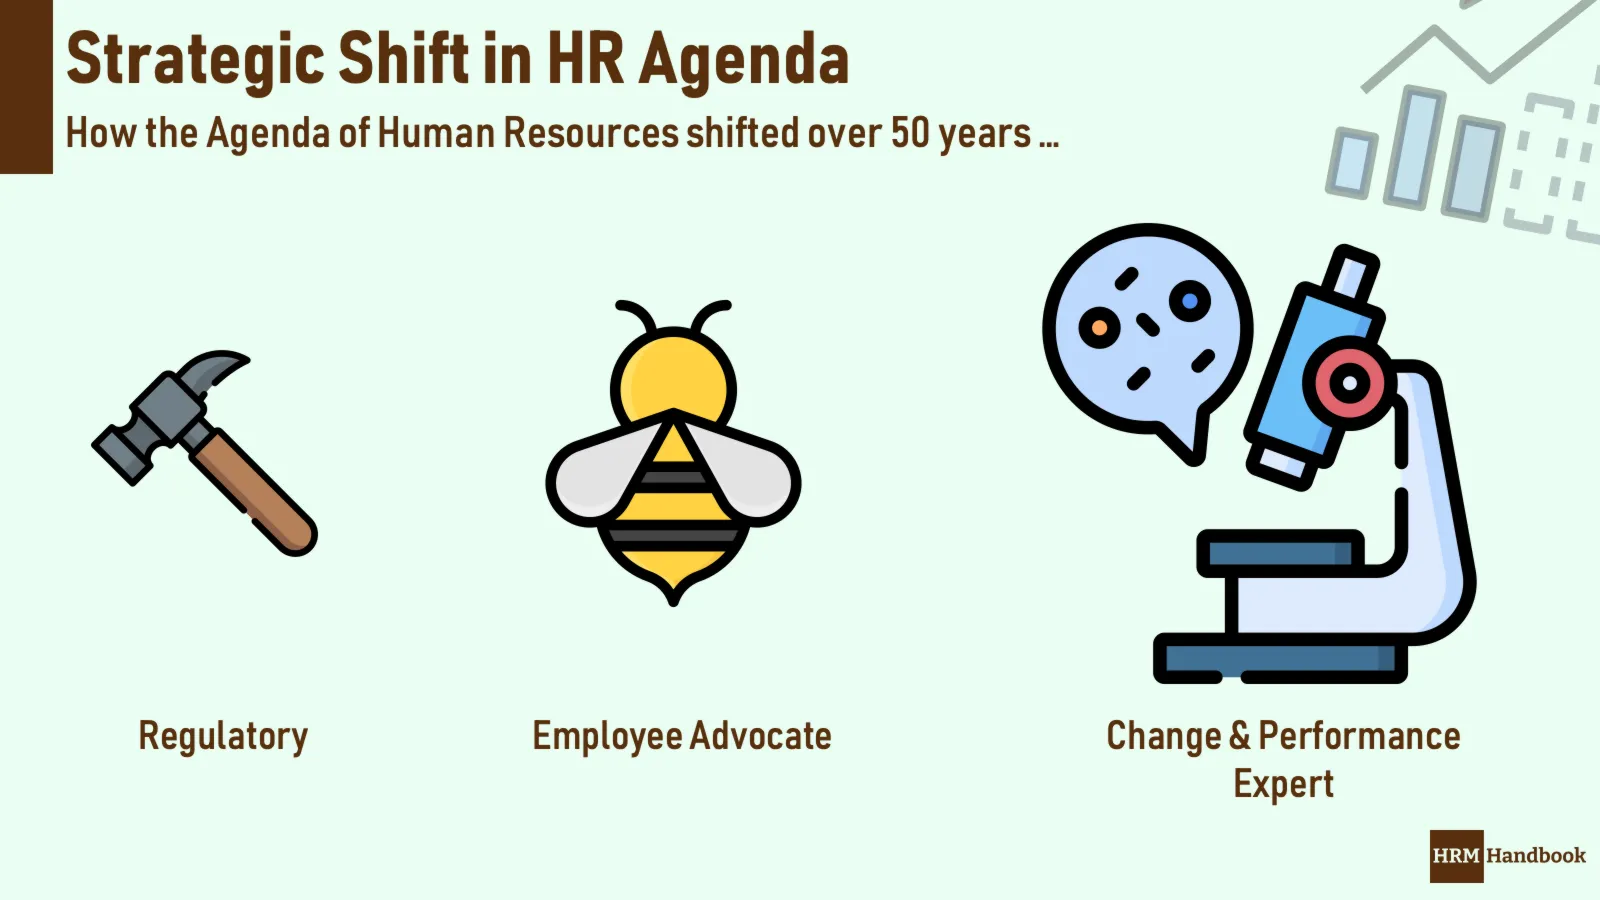 A strategic shift in HR Agenda